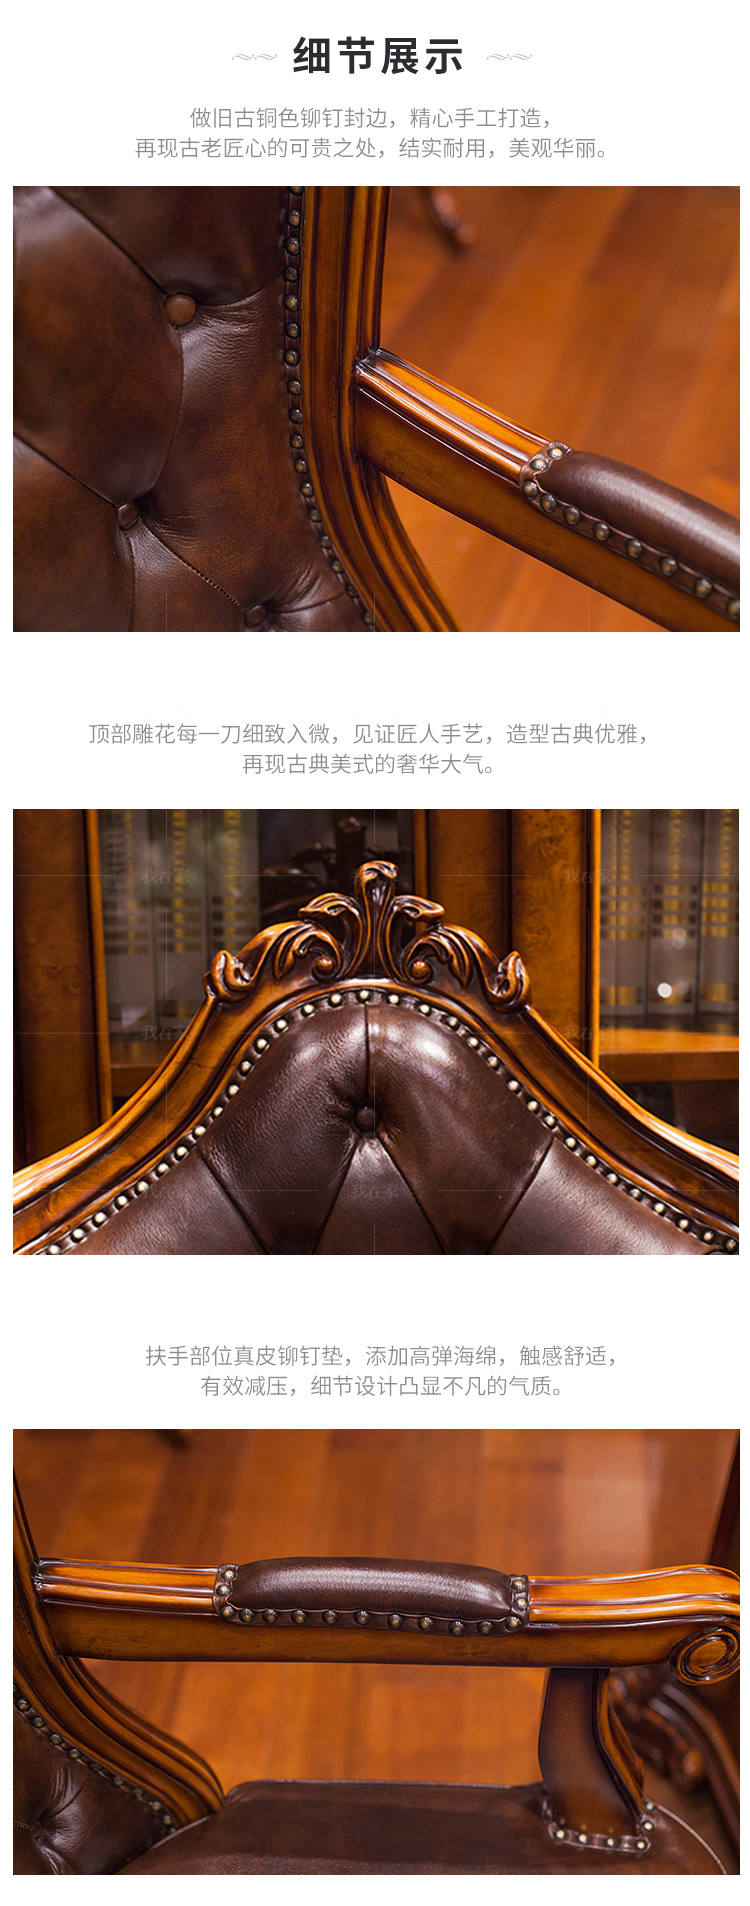 古典欧式风格莱特纳转椅的家具详细介绍